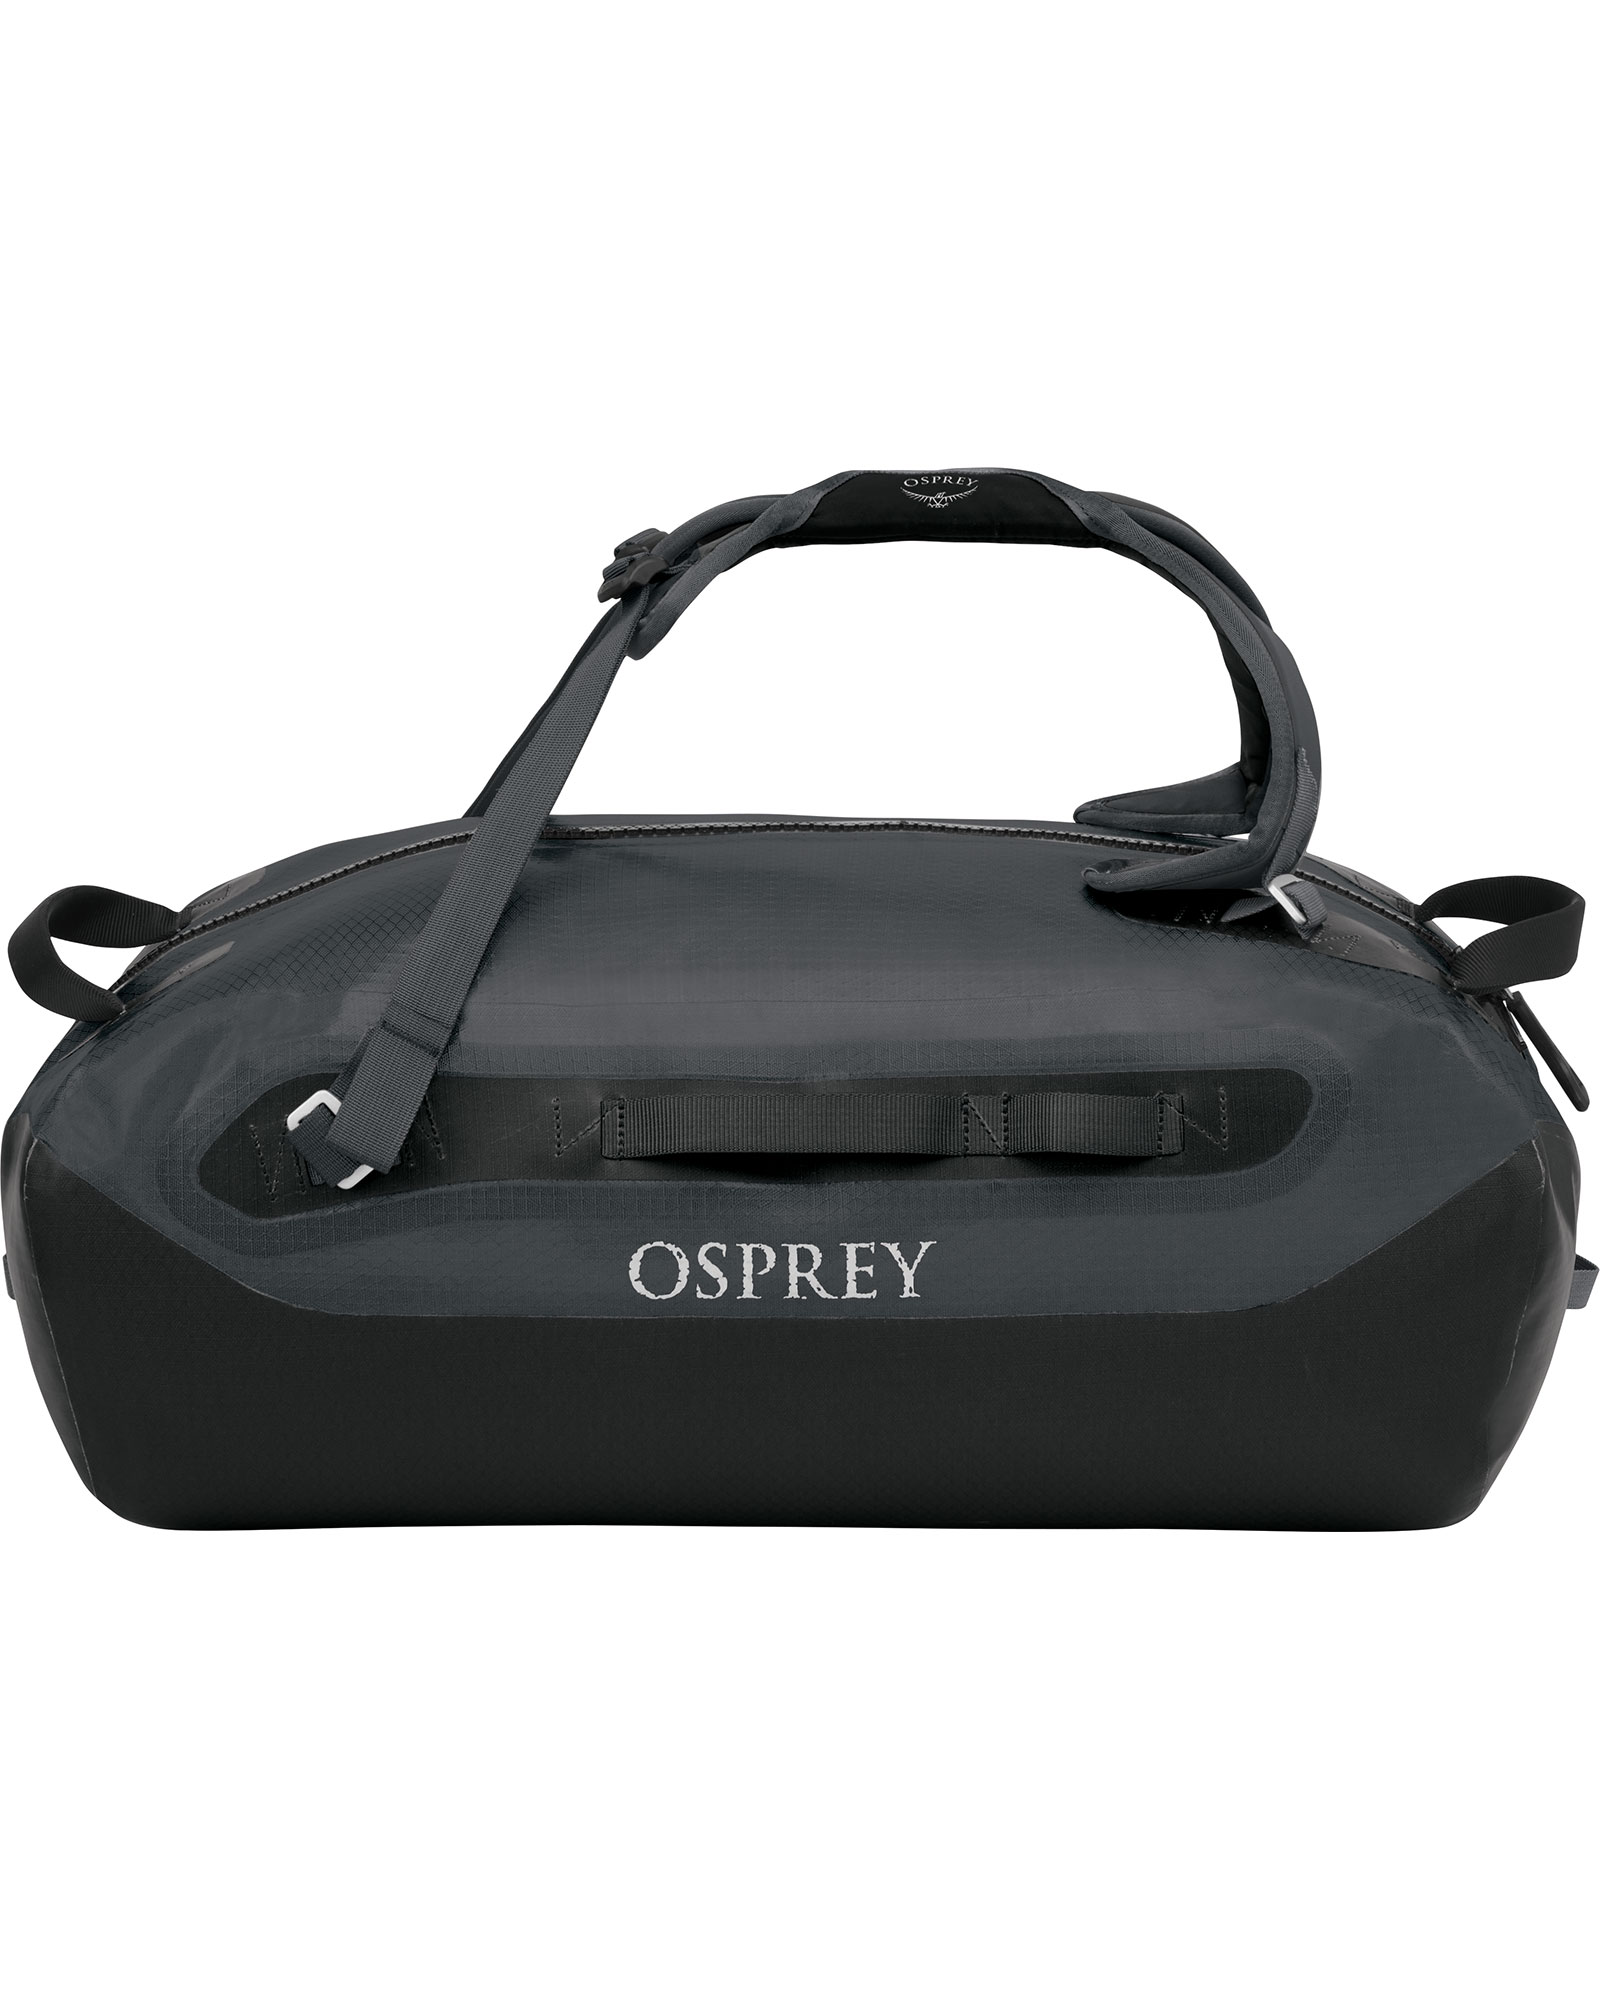 Osprey Transporter 40 Waterproof Duffel